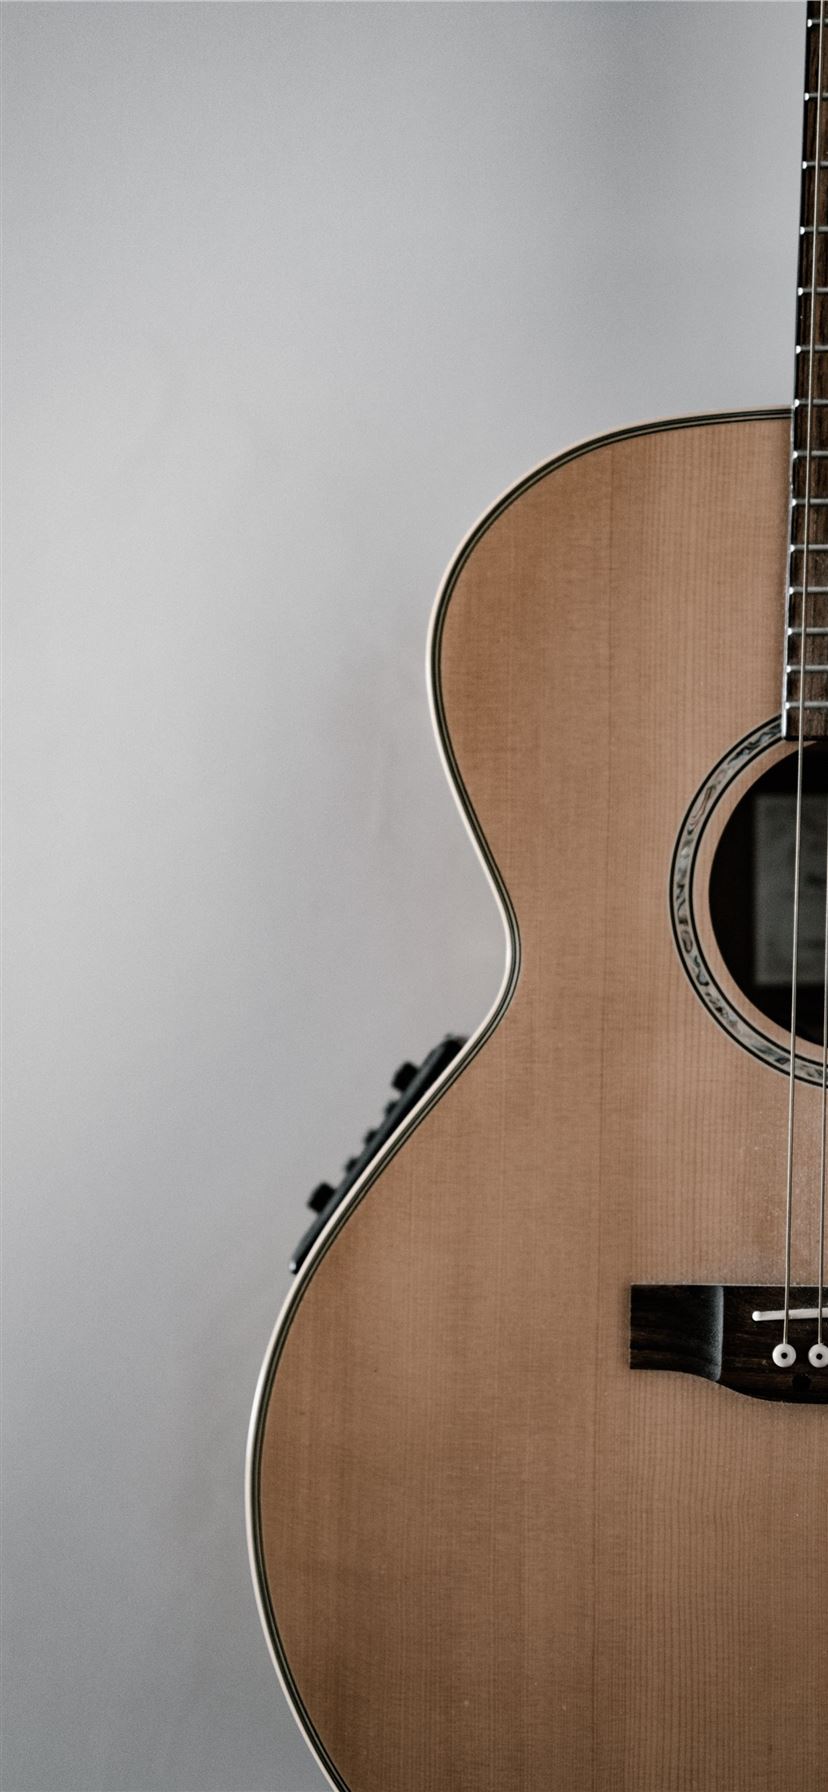 brown guitar iPhone Wallpaper Free Download